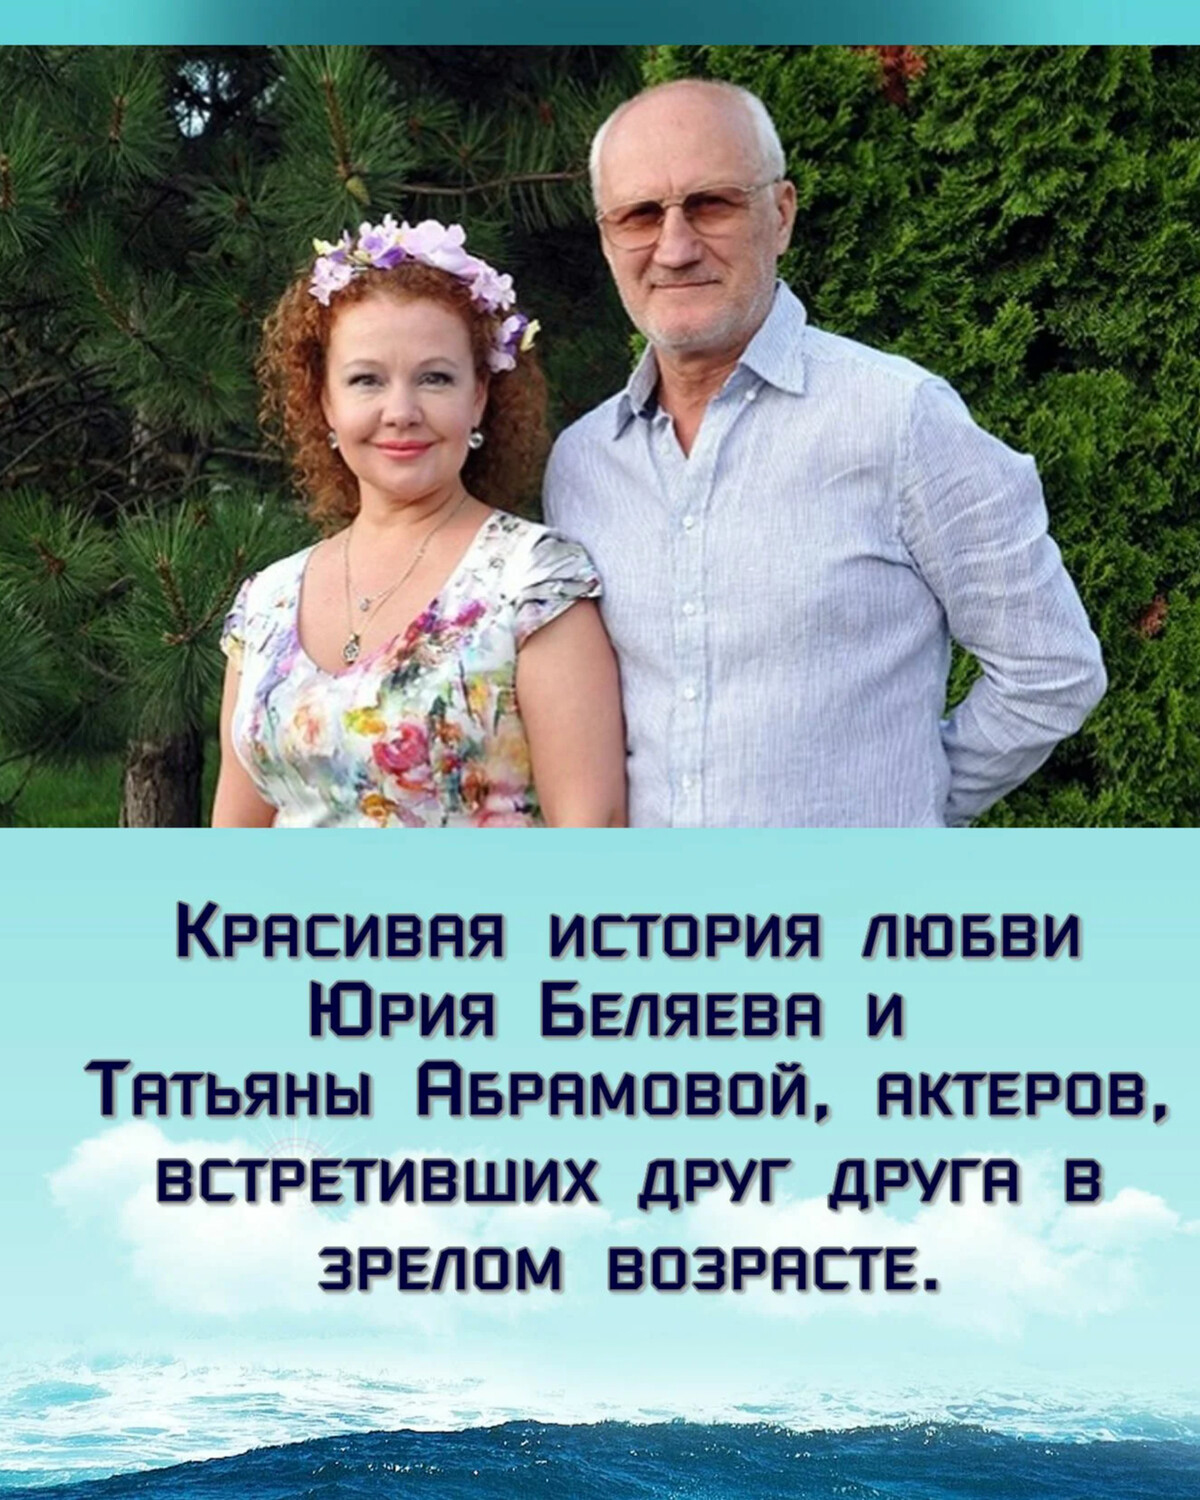 юрий беляев актер фото с женой